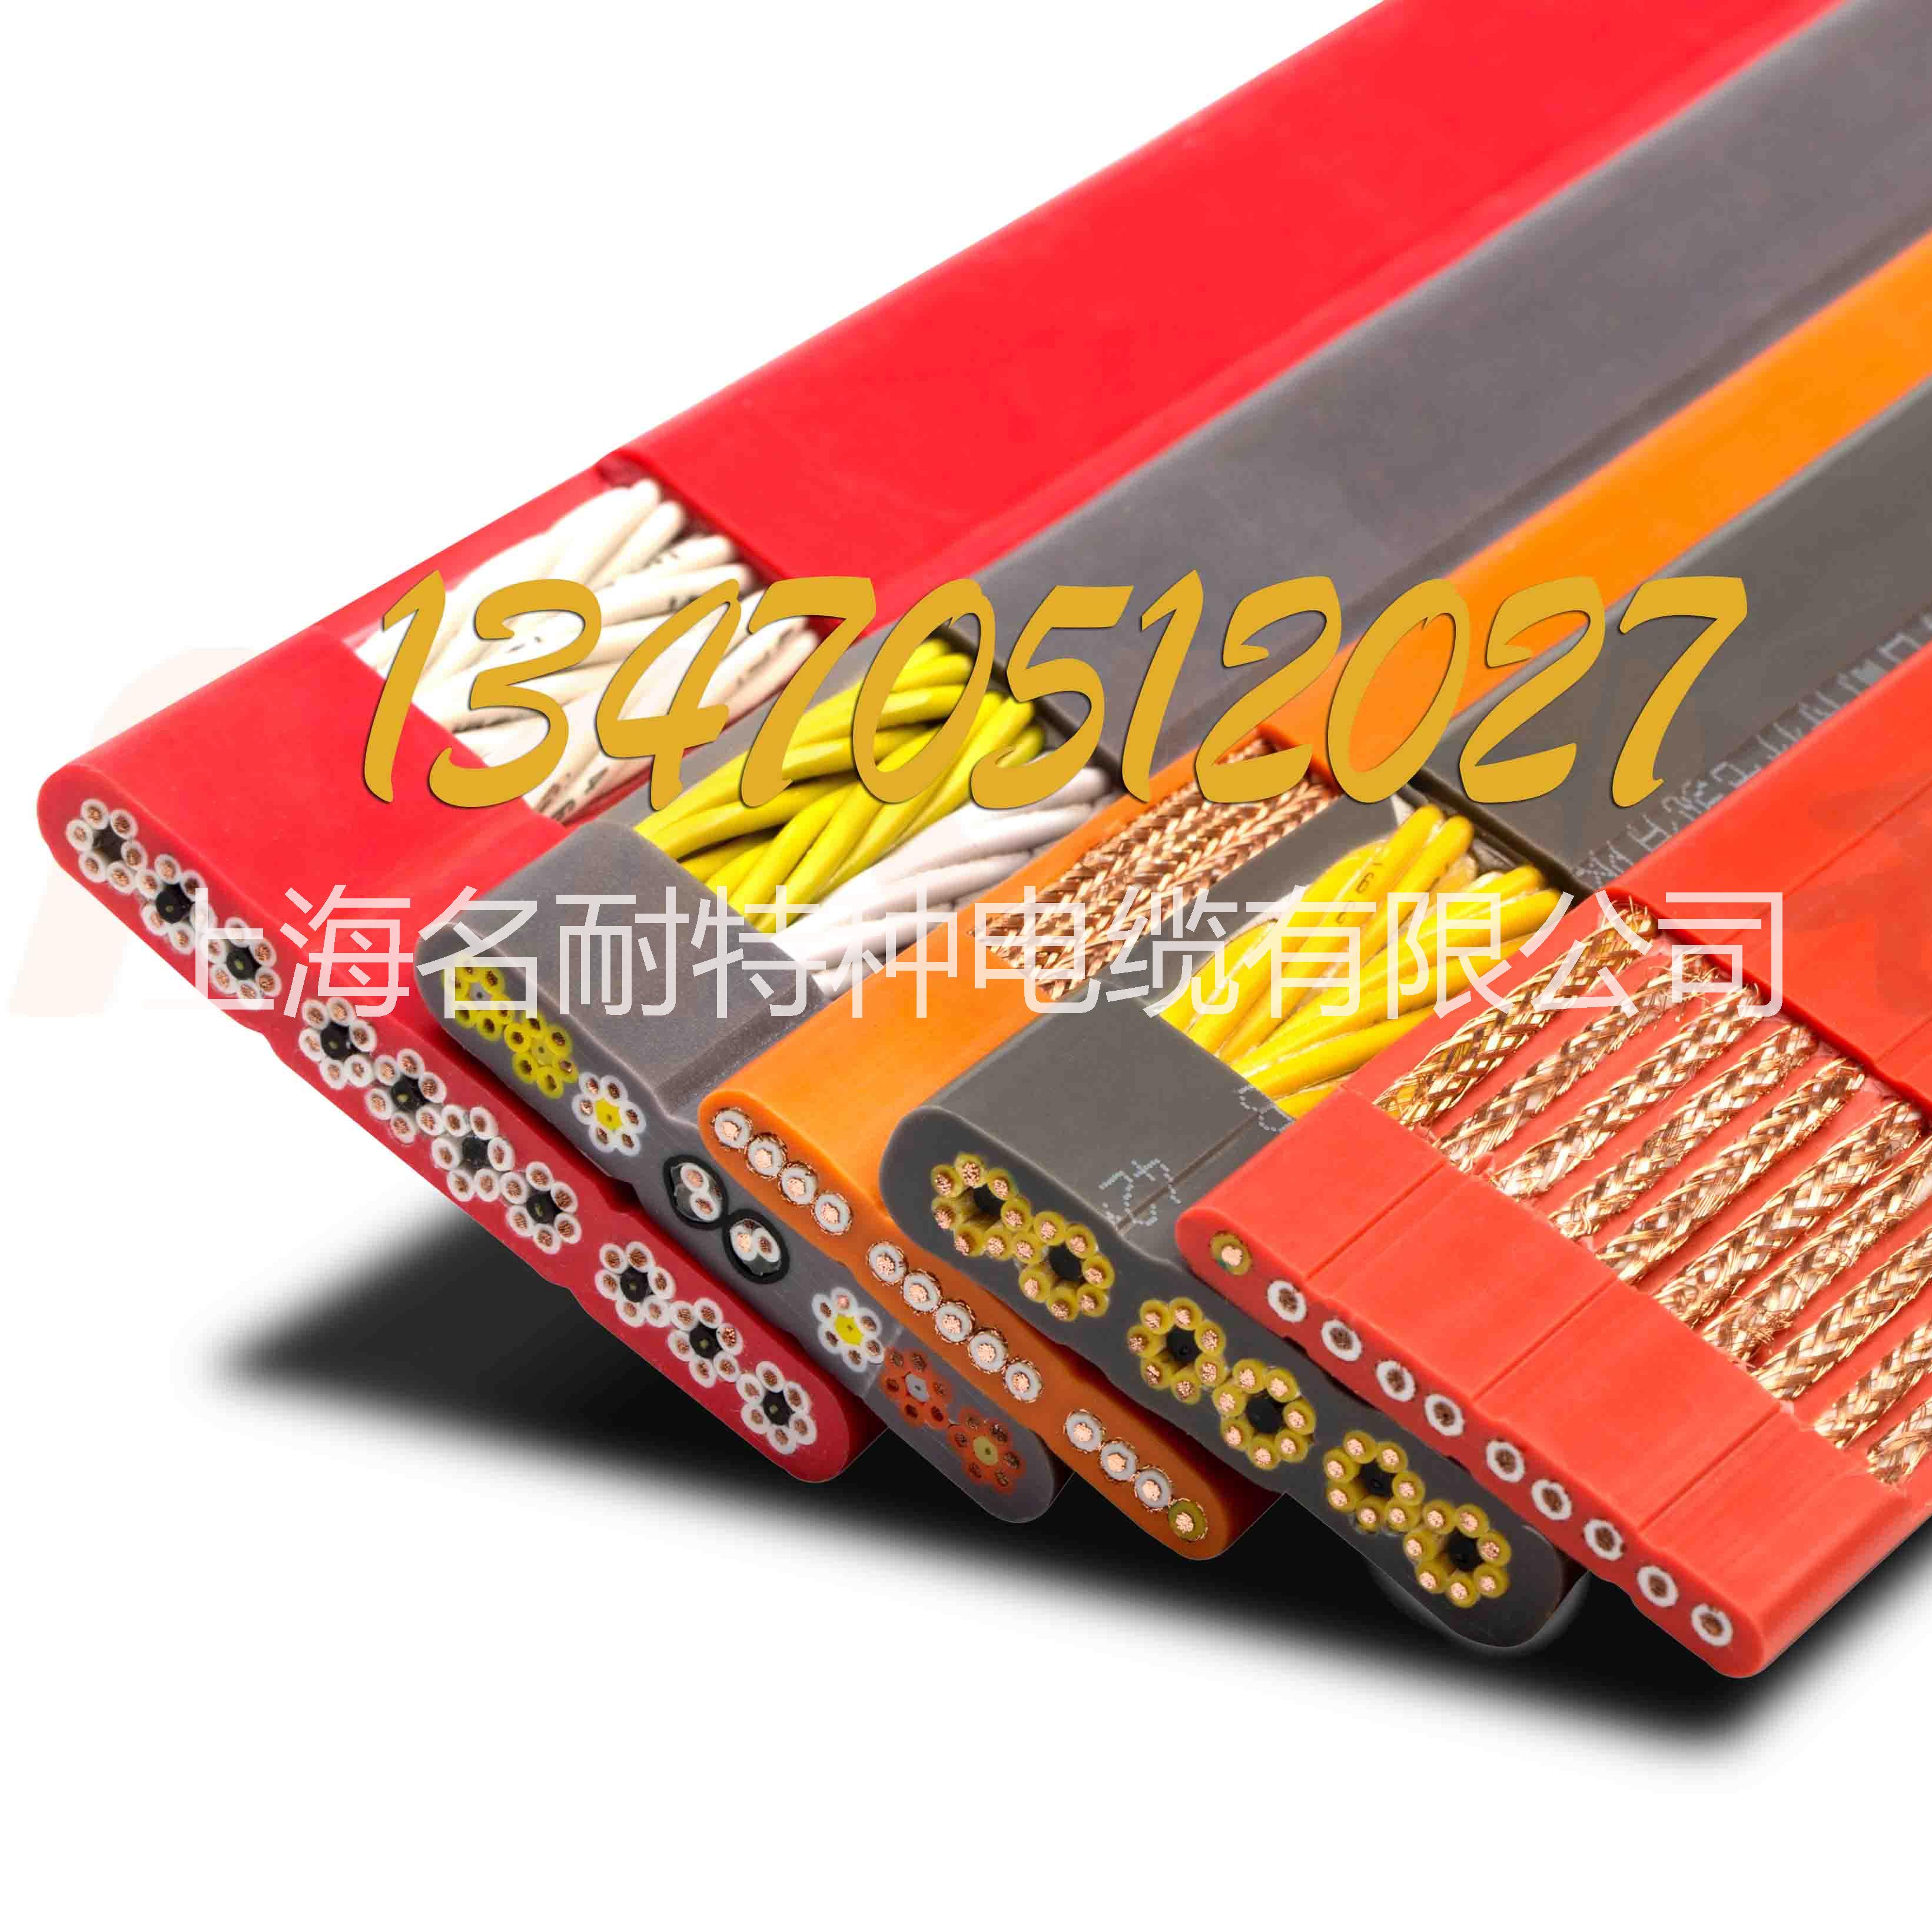 上海名耐专业加工柔性卷筒电缆供应上海名耐专业加工柔性卷筒电缆